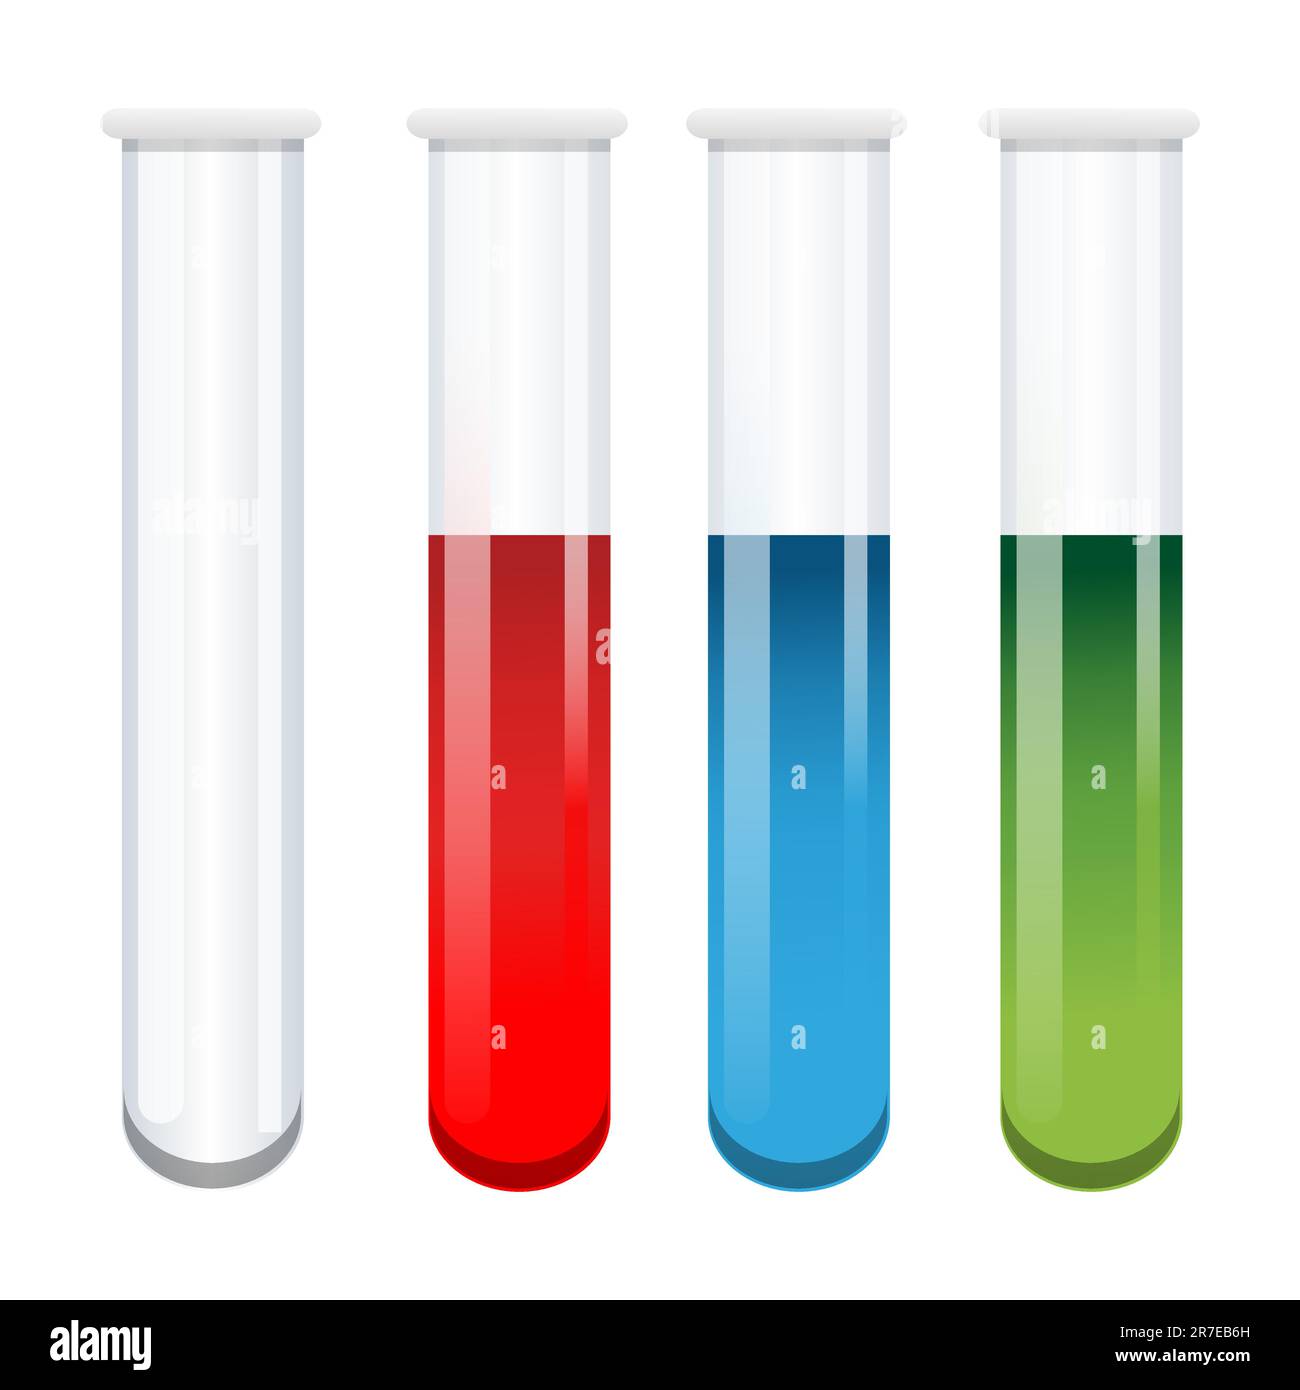 illustration of test tubes on white background Stock Vector Image & Art ...